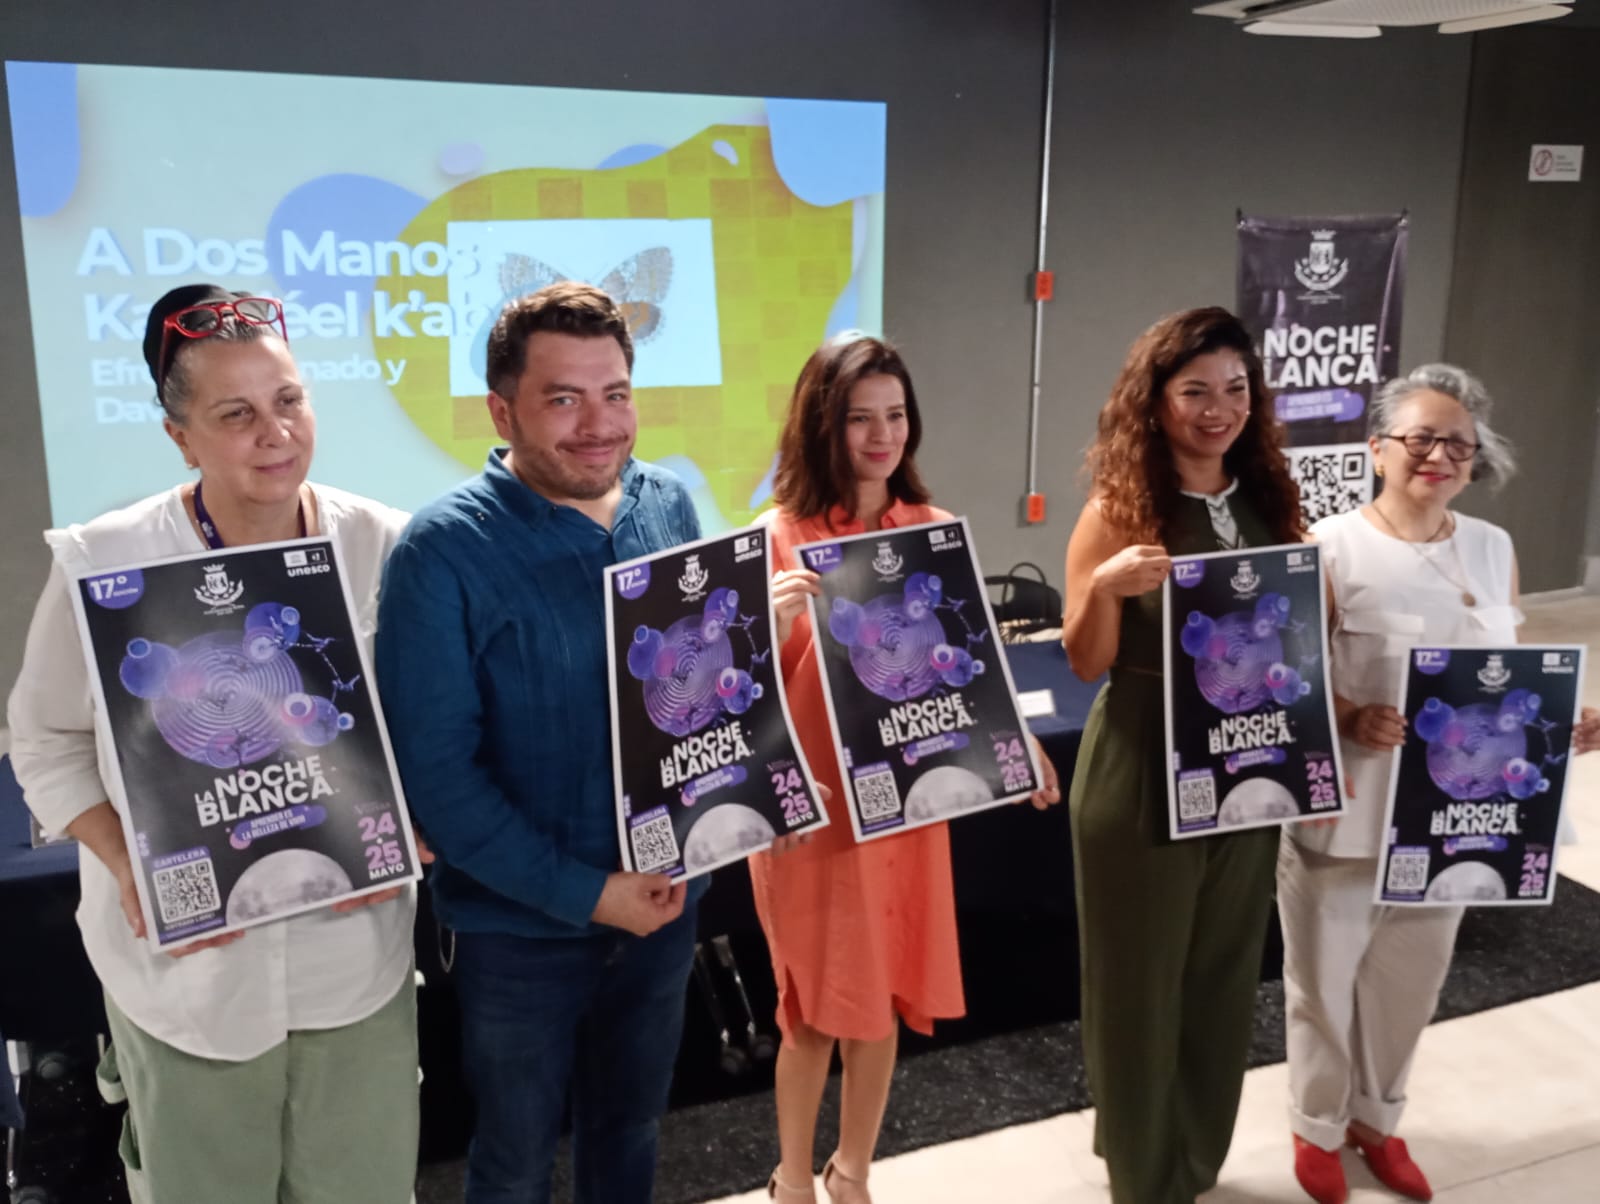 Conoce la cartelera alternativa para la Noche Blanca en Mérida